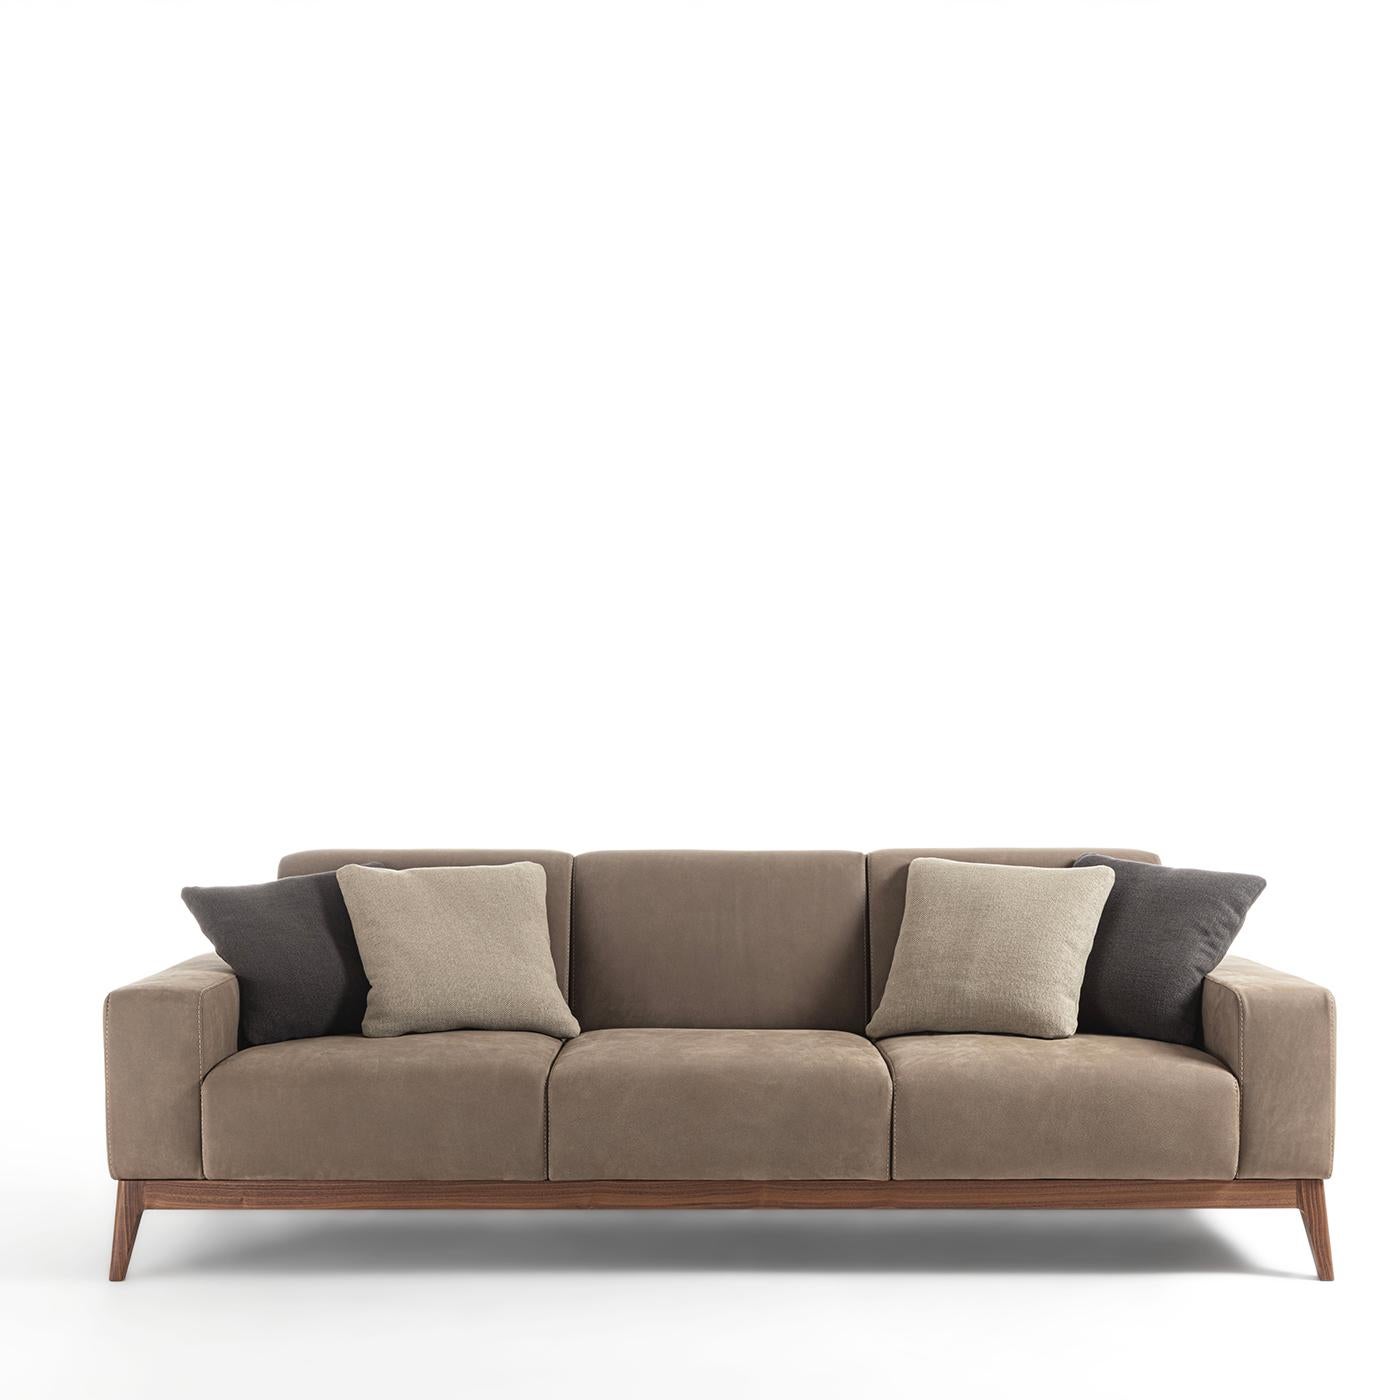 Dieses raffinierte Dreisitzer-Sofa wurde mit einem Sinn für Ruhe, zeitlose Eleganz und Komfort entworfen. Seine klaren Linien umreißen kühne Volumen, deren großzügige Polsterung von einem luxuriösen taupefarbenen Bezug umhüllt ist, der ein